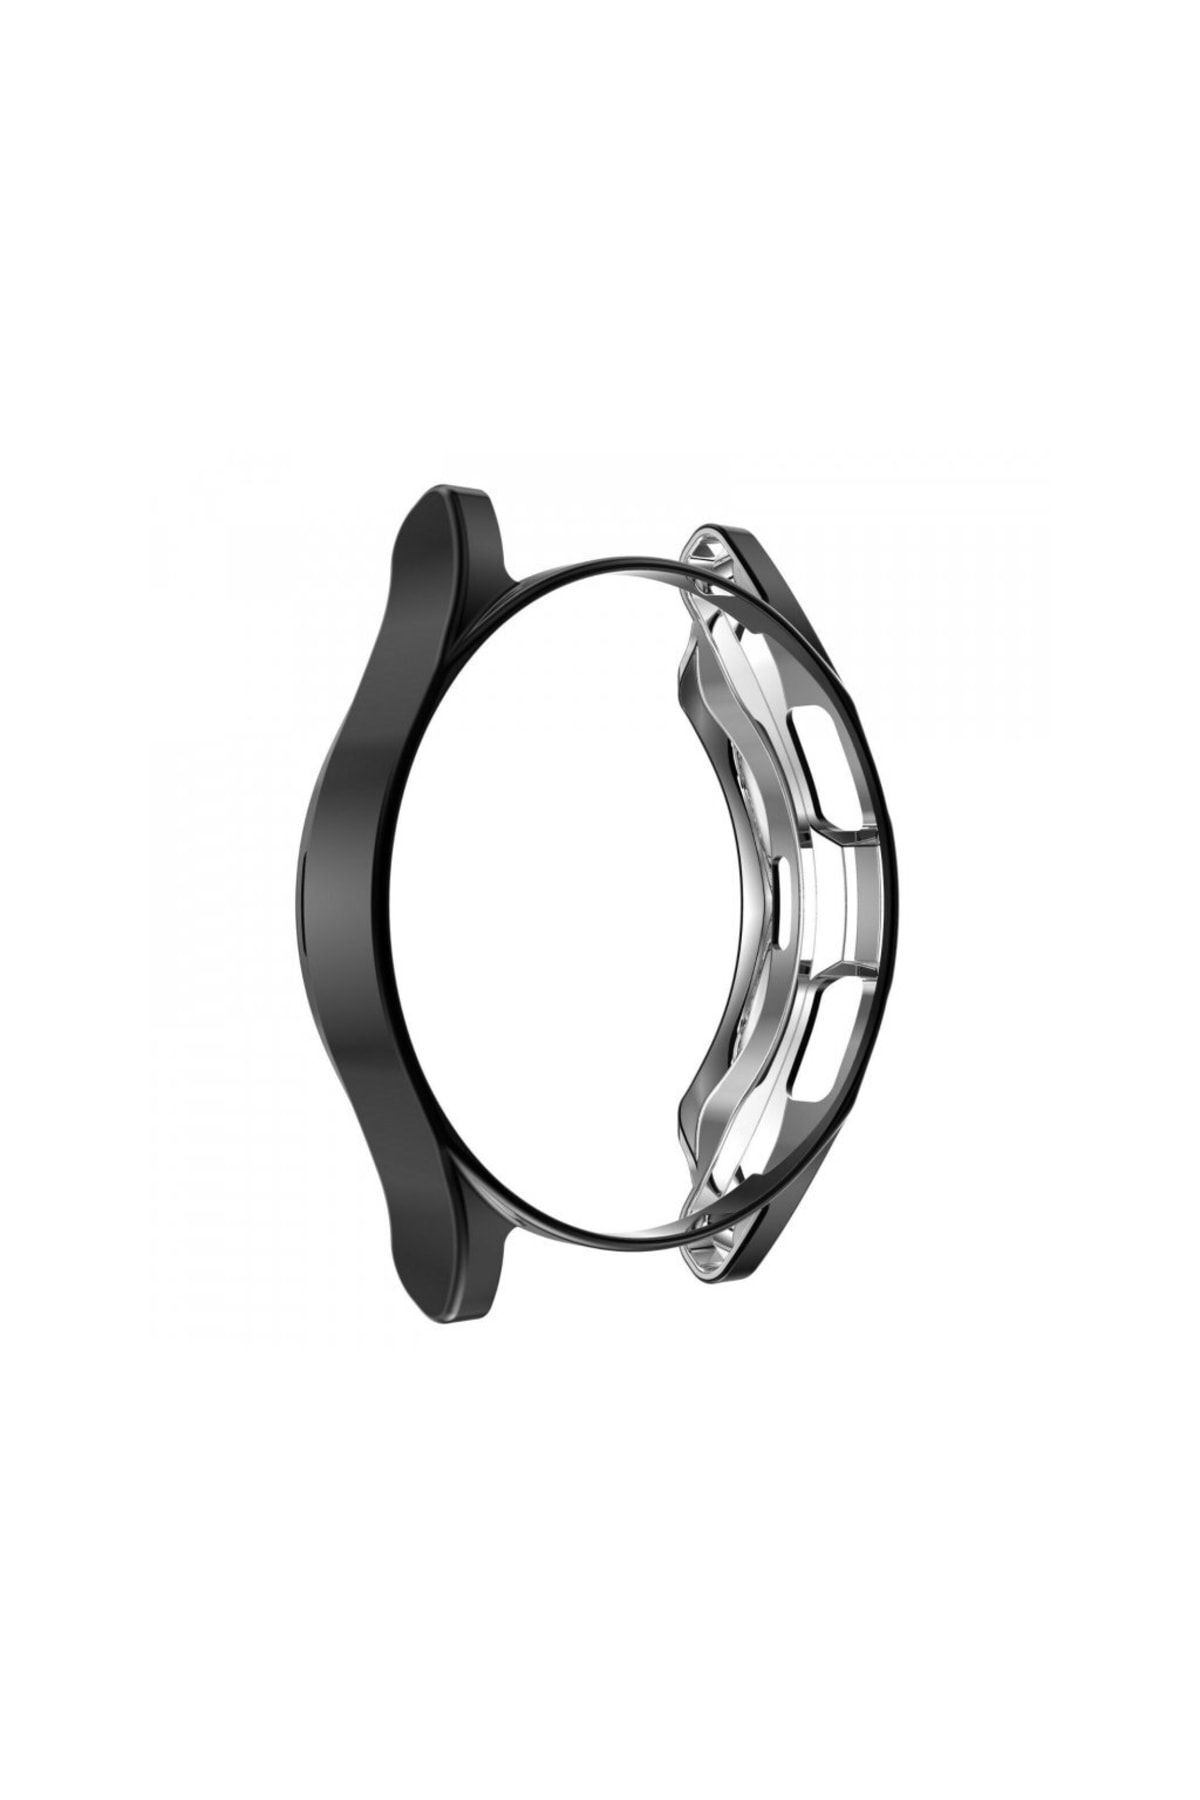 MORTY Samsung Galaxy Watch4 46mm Önü Açık Tasarım Silikon Kılıf